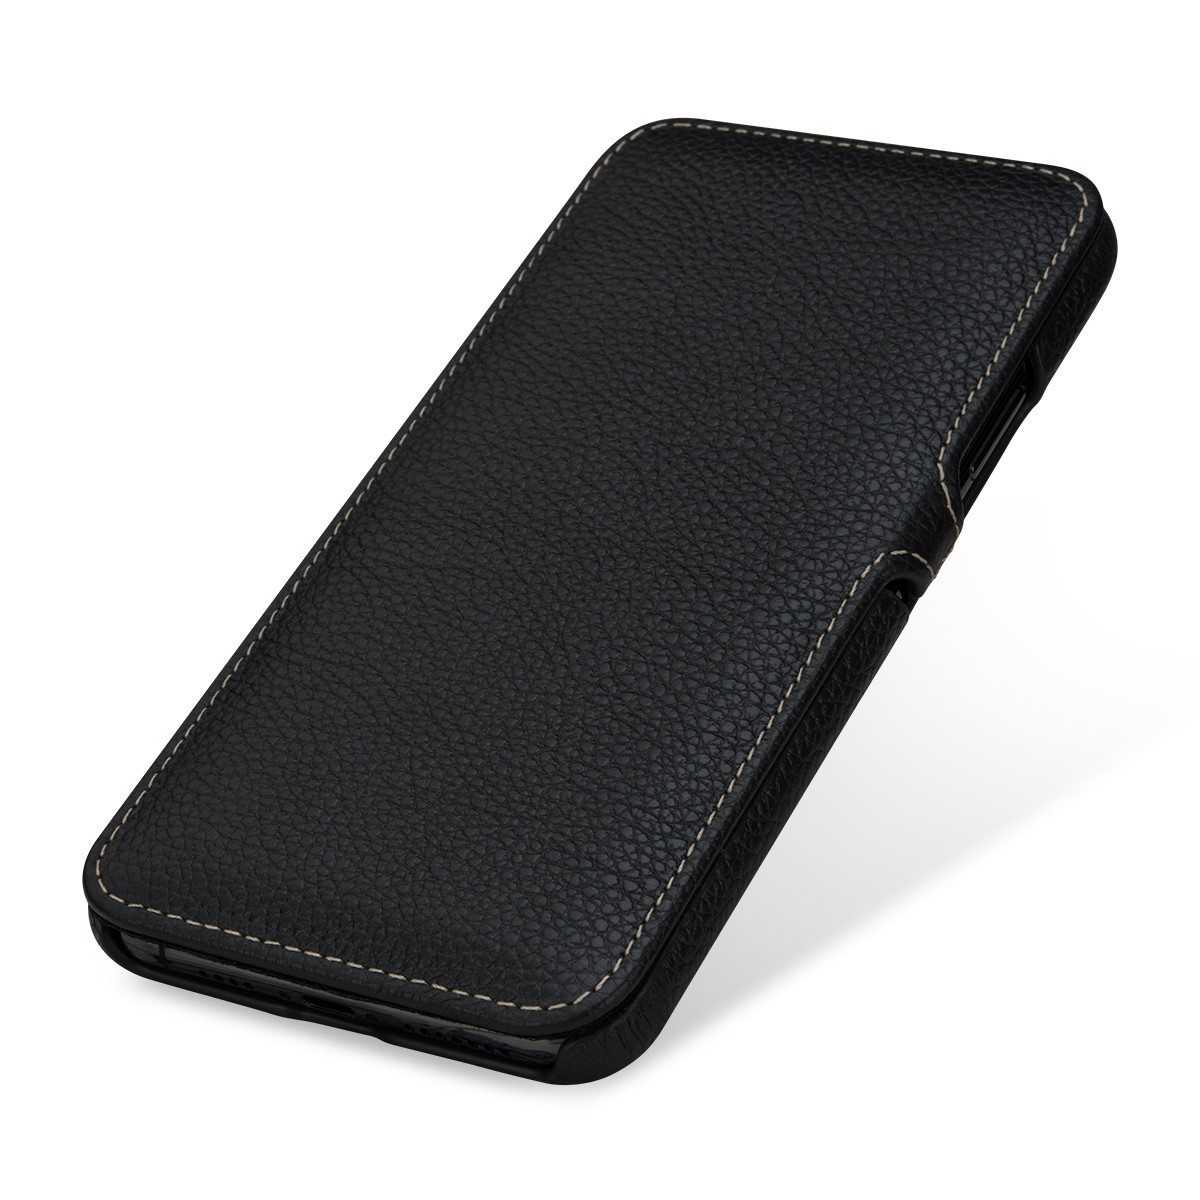 Etui compatible iPhone 11 Pro book type grainé noir en cuir véritable - Stilgut